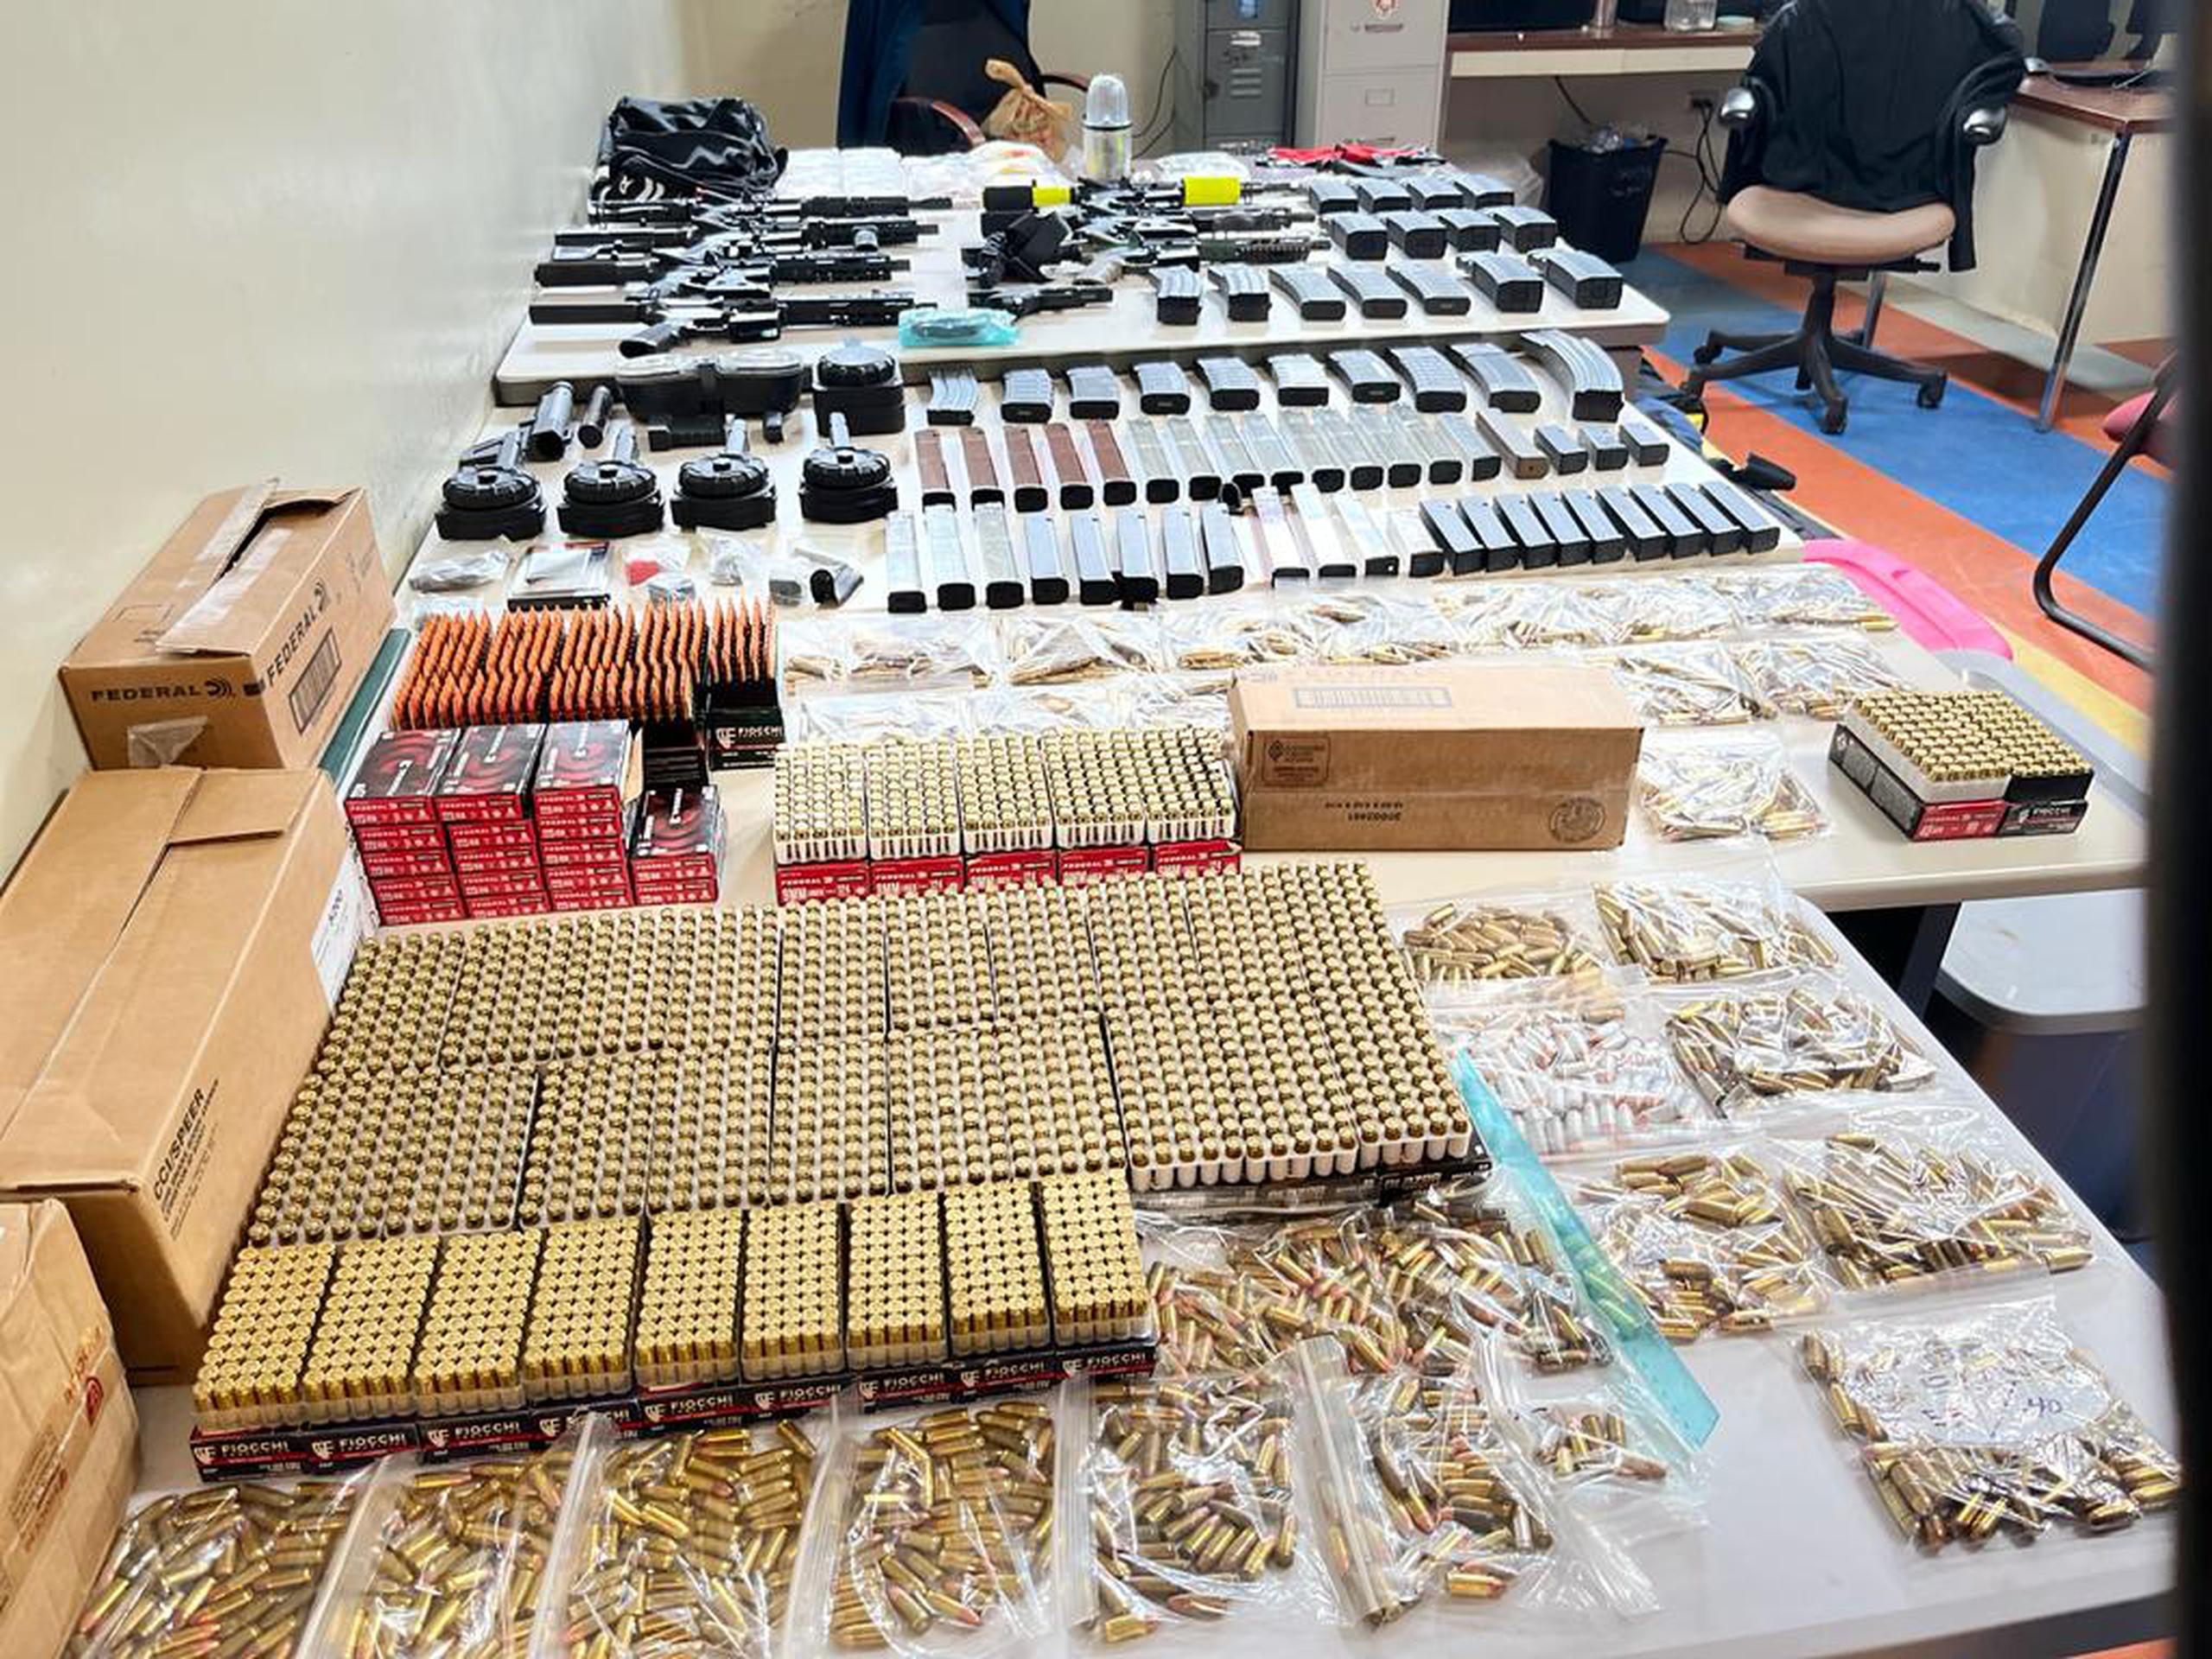 Armas ilegales, cargadores, más de 4,000 municiones, chalecos antibalas y sustancias controladas ocupadas en una casa abandonada del barrio Playita Cortada, en Santa Isabel.